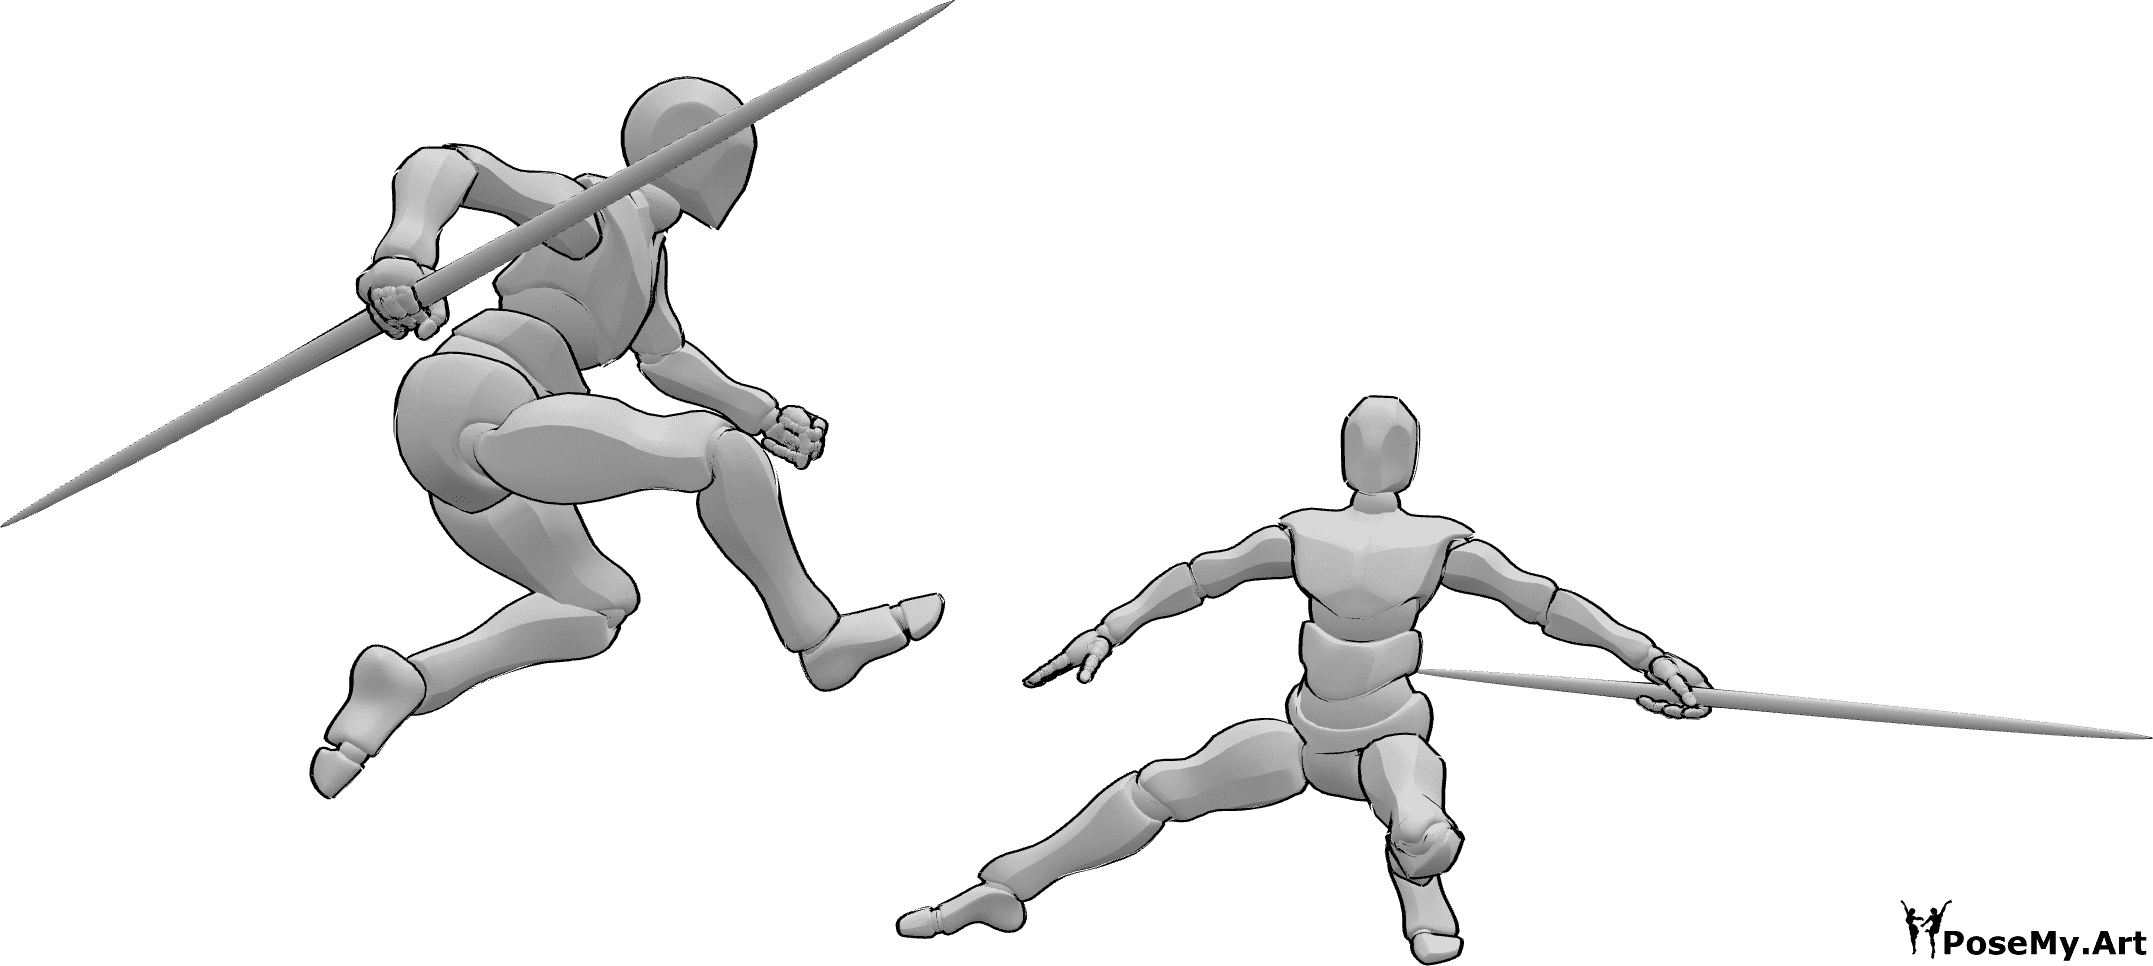 Referencia de poses- Los bastones de combate saltan pose - Dos machos se pelean con bastones, uno de ellos posa saltando